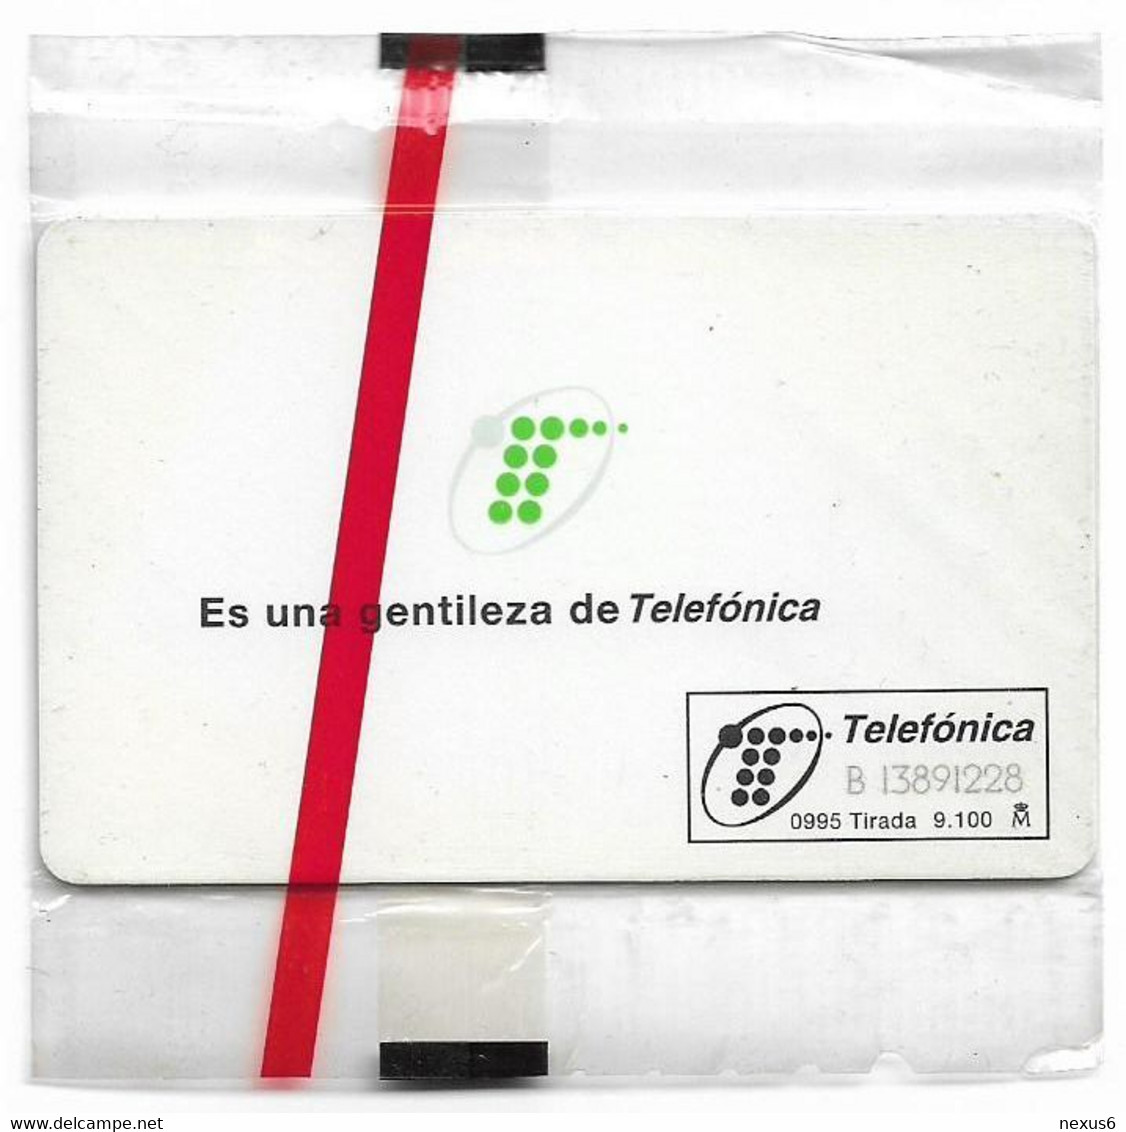 Spain - Telefónica - Imagen 95 - G-008 - 09.1995, 100PTA, 9.100ex, NSB - Emisiones Gratuitas